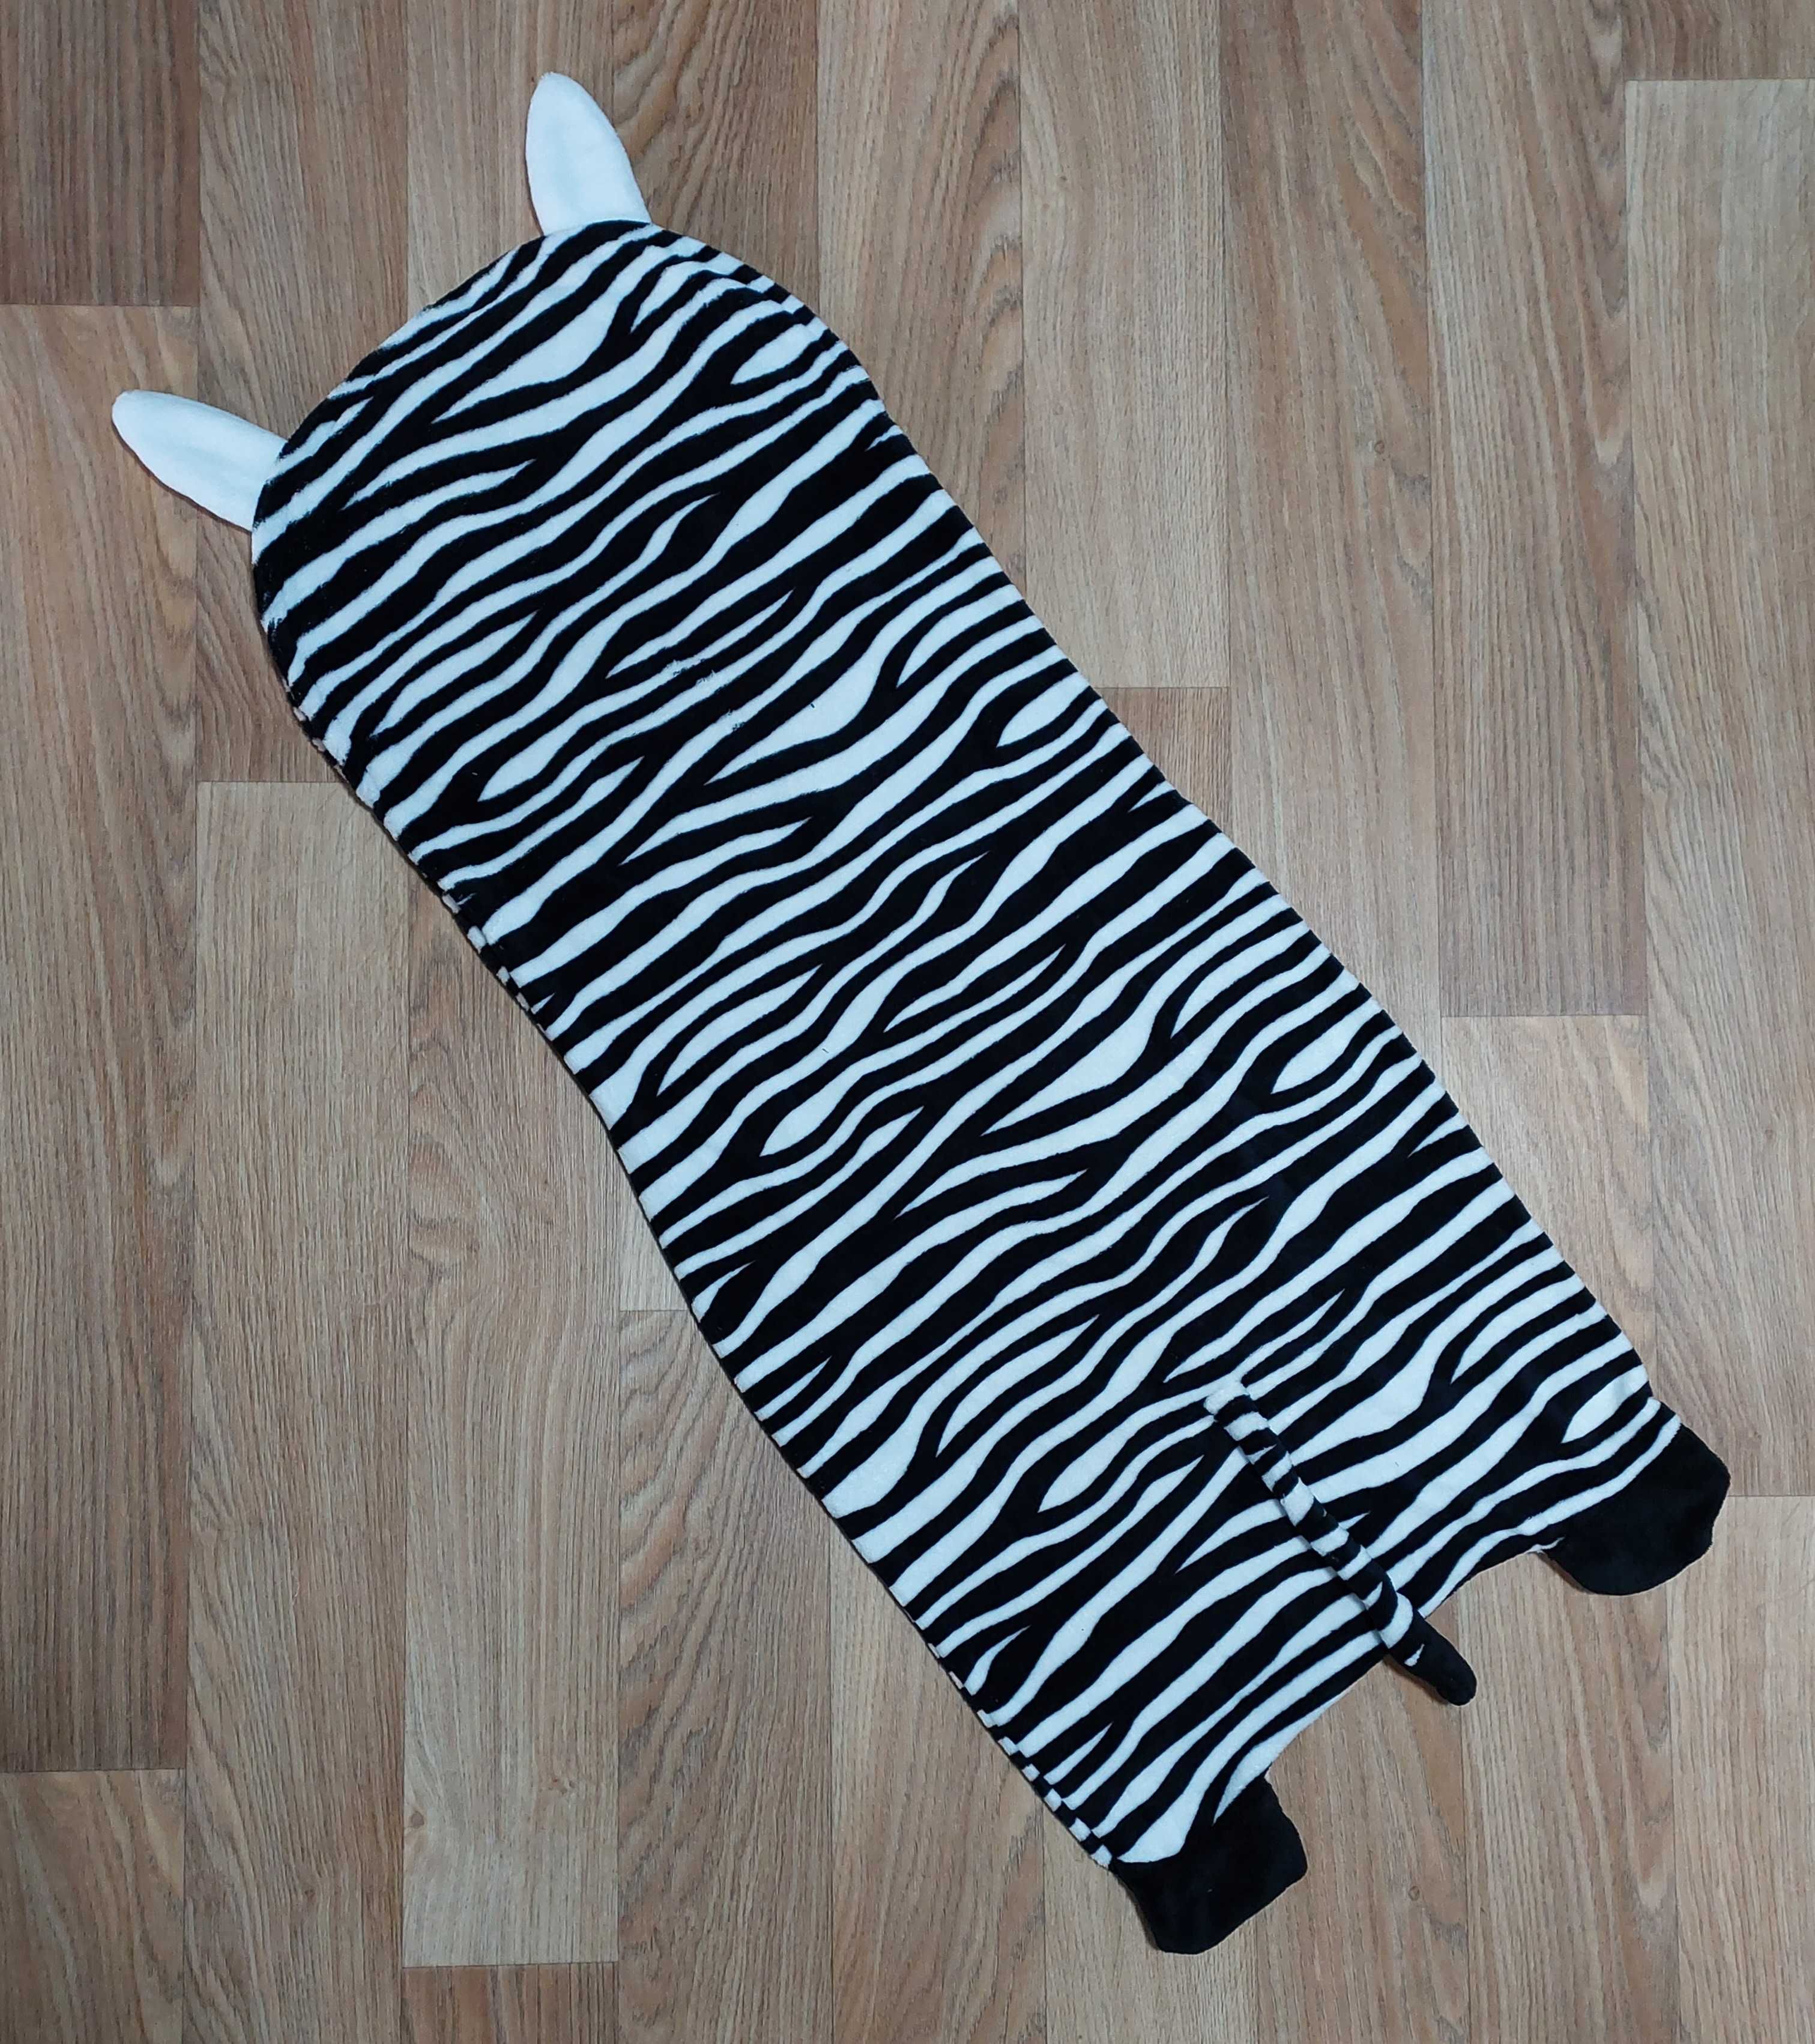 Плед одеяло спальный мешок зебра 2-5 лет